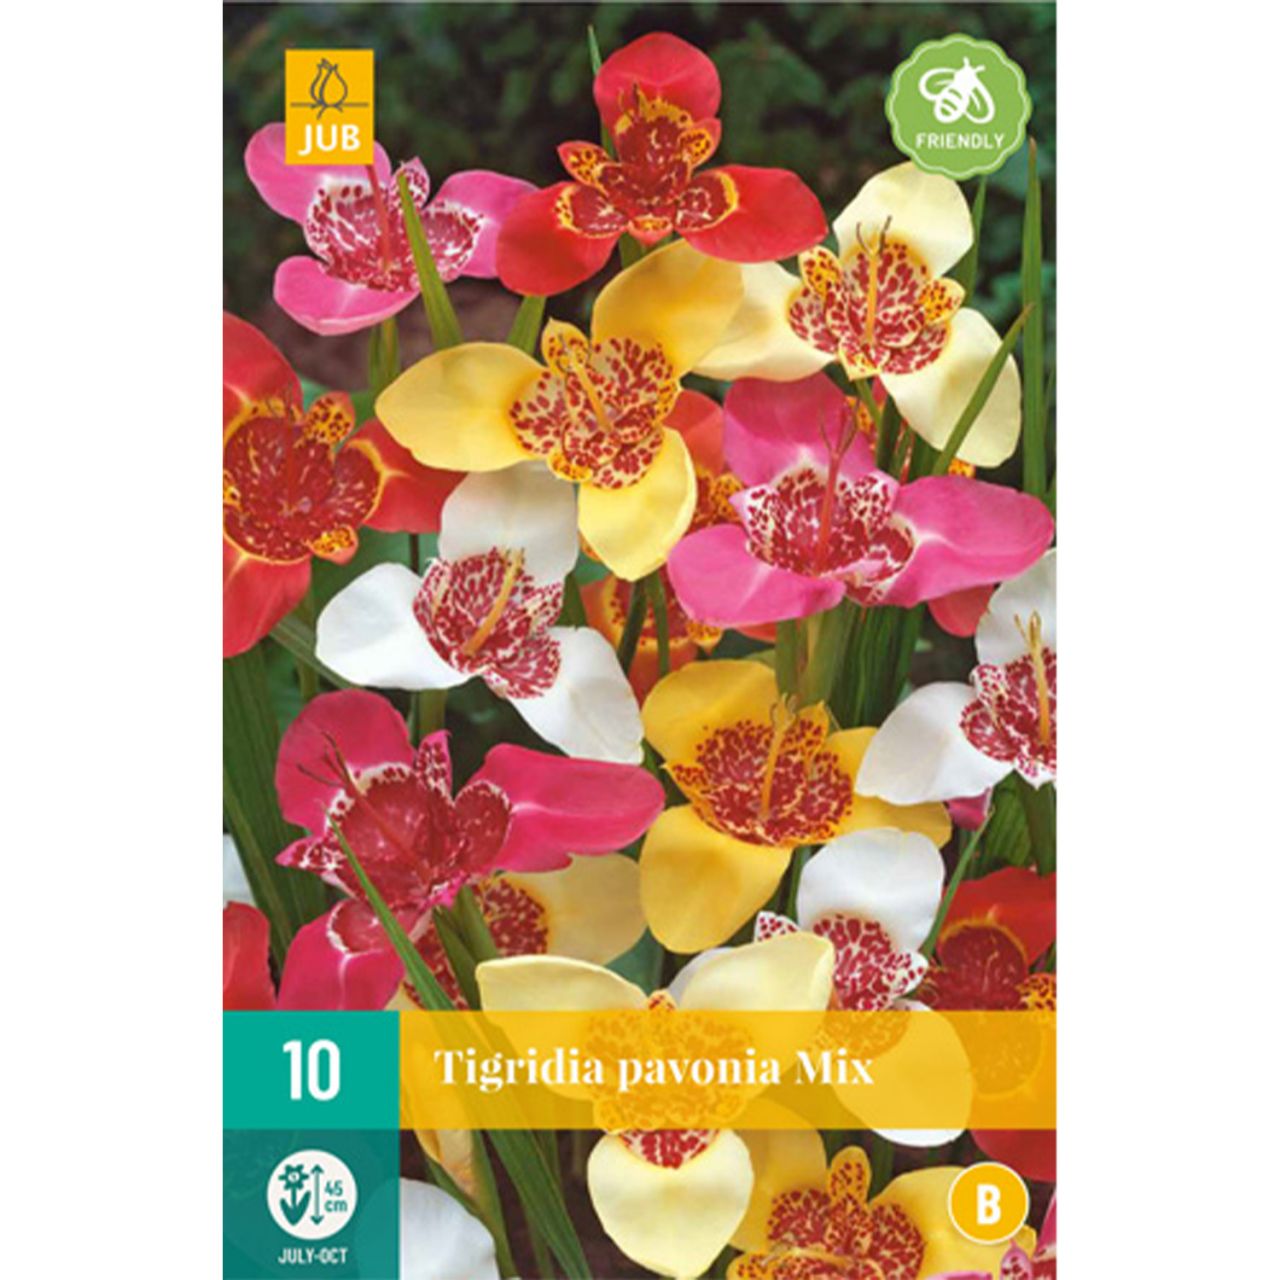 Kategorie <b>Frühlings-Blumenzwiebeln </b> - Pfauenlilie 'Mischung' - 8 Stück - Tigridia pavonia